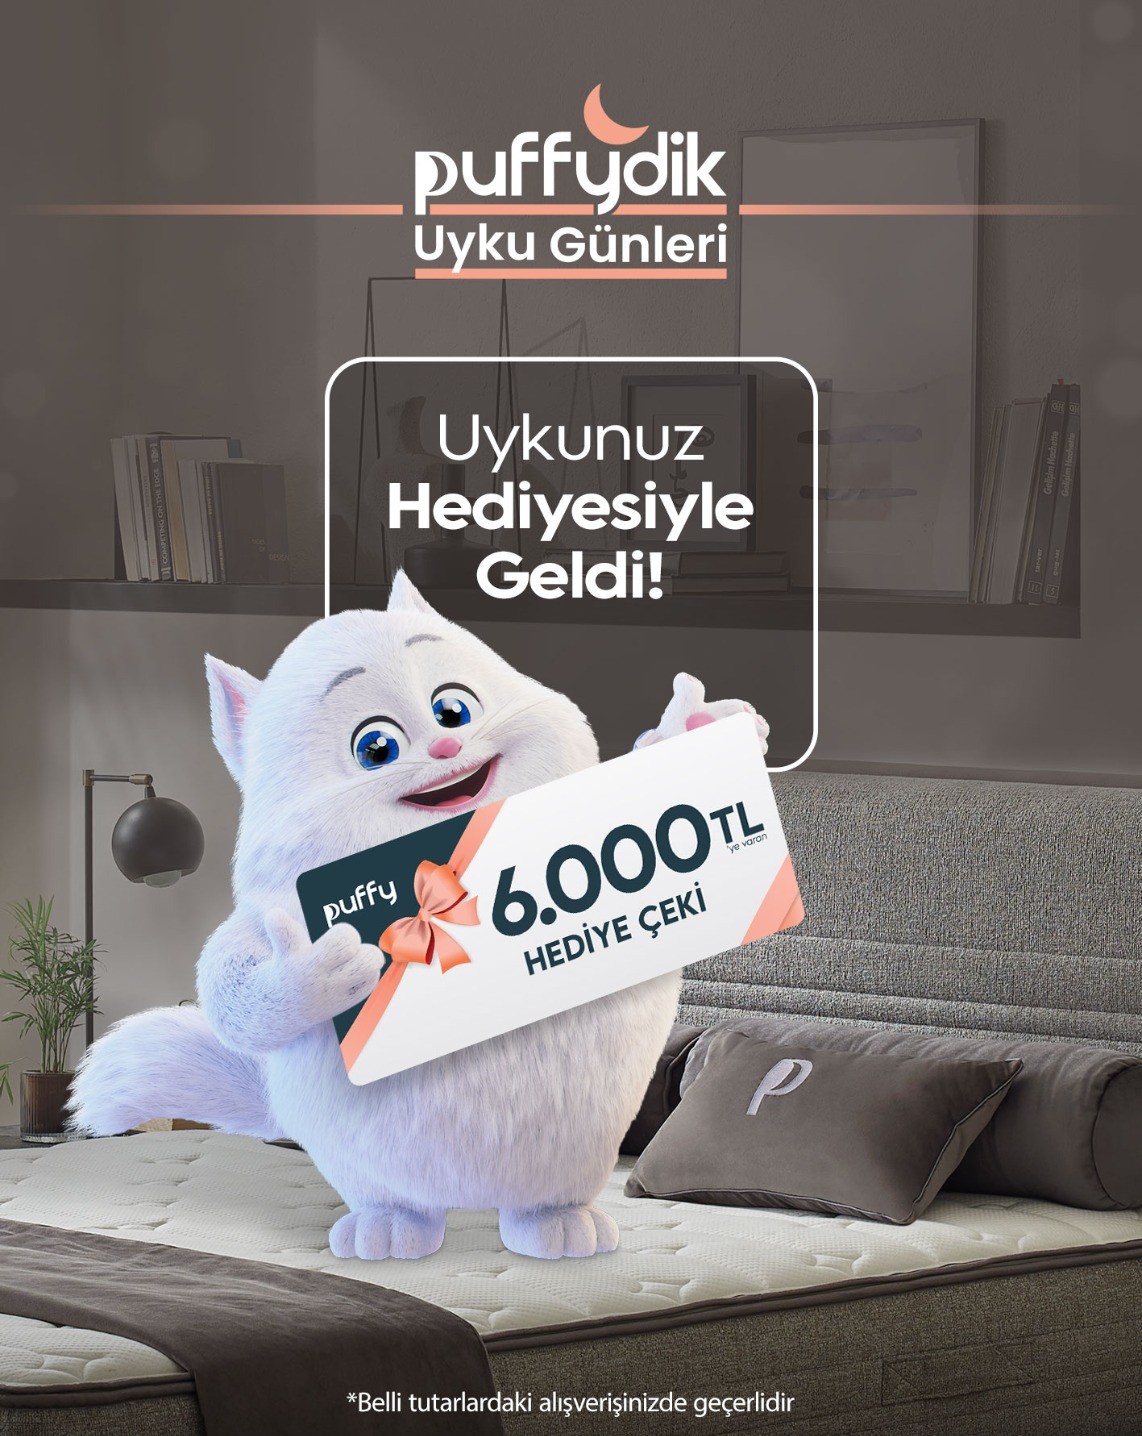 Puffy’den Yatay Zeka’lı “Puffy’dik Uyku Günleri”   kampanyası reklam filmi